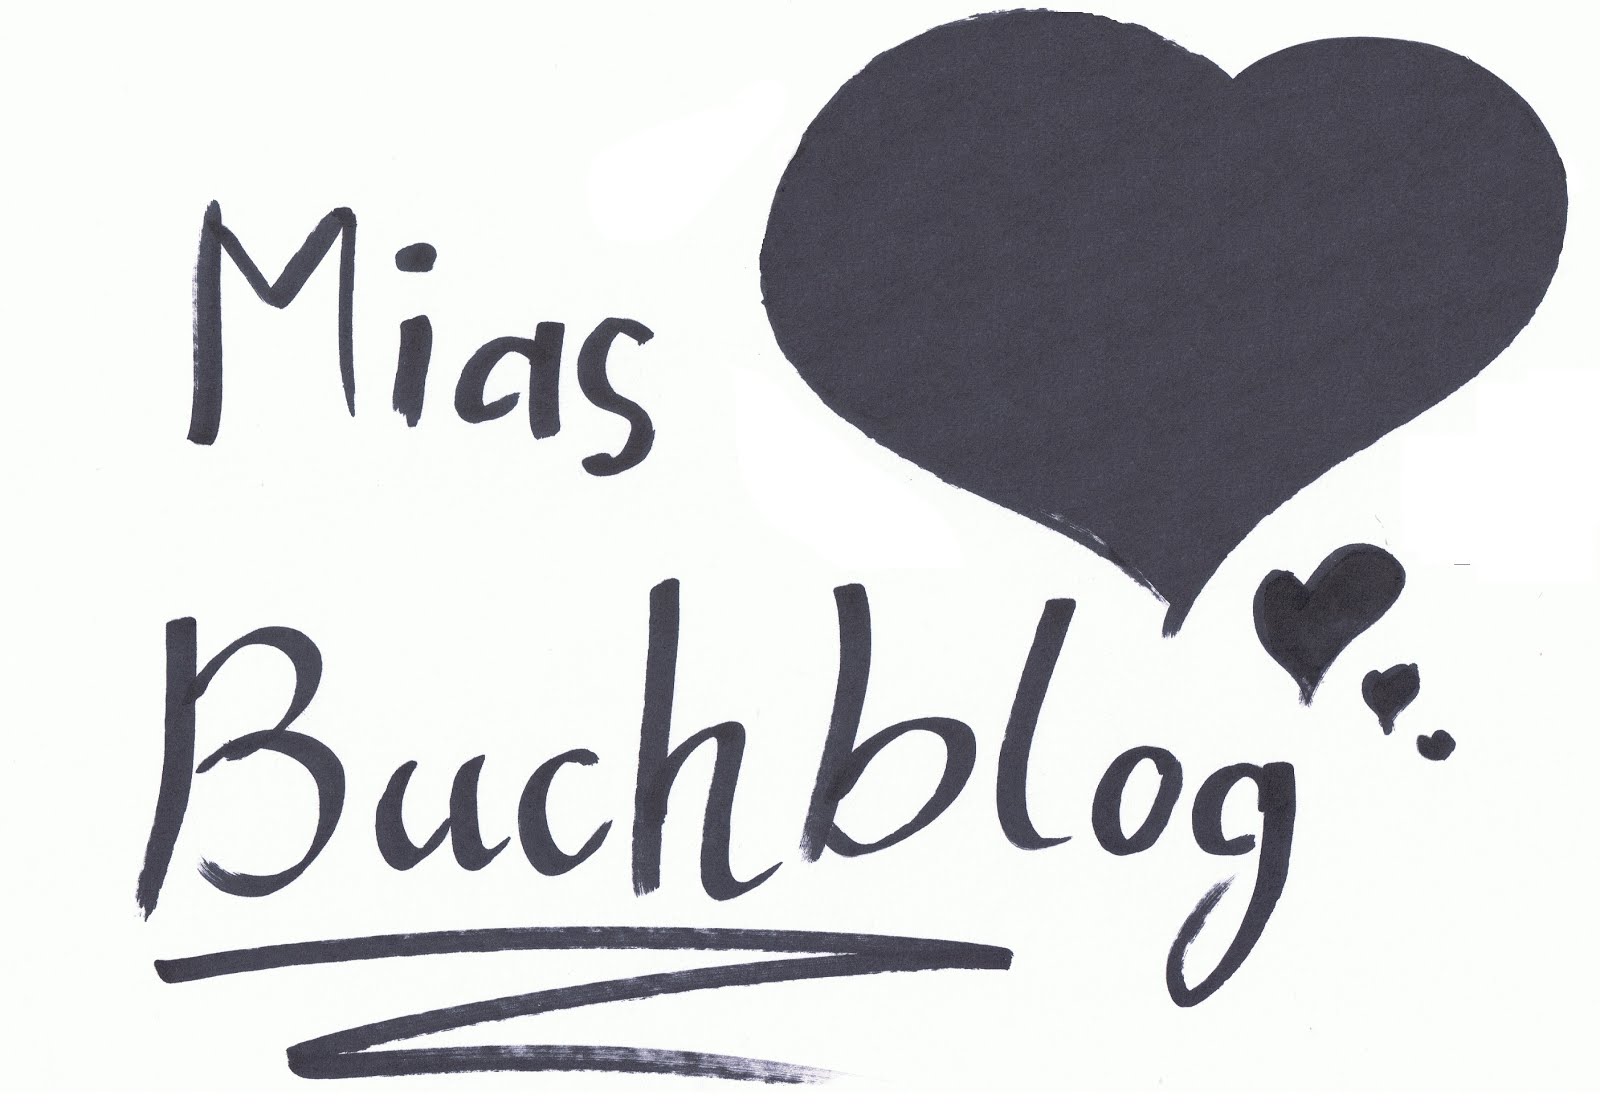 Miasbuchblog